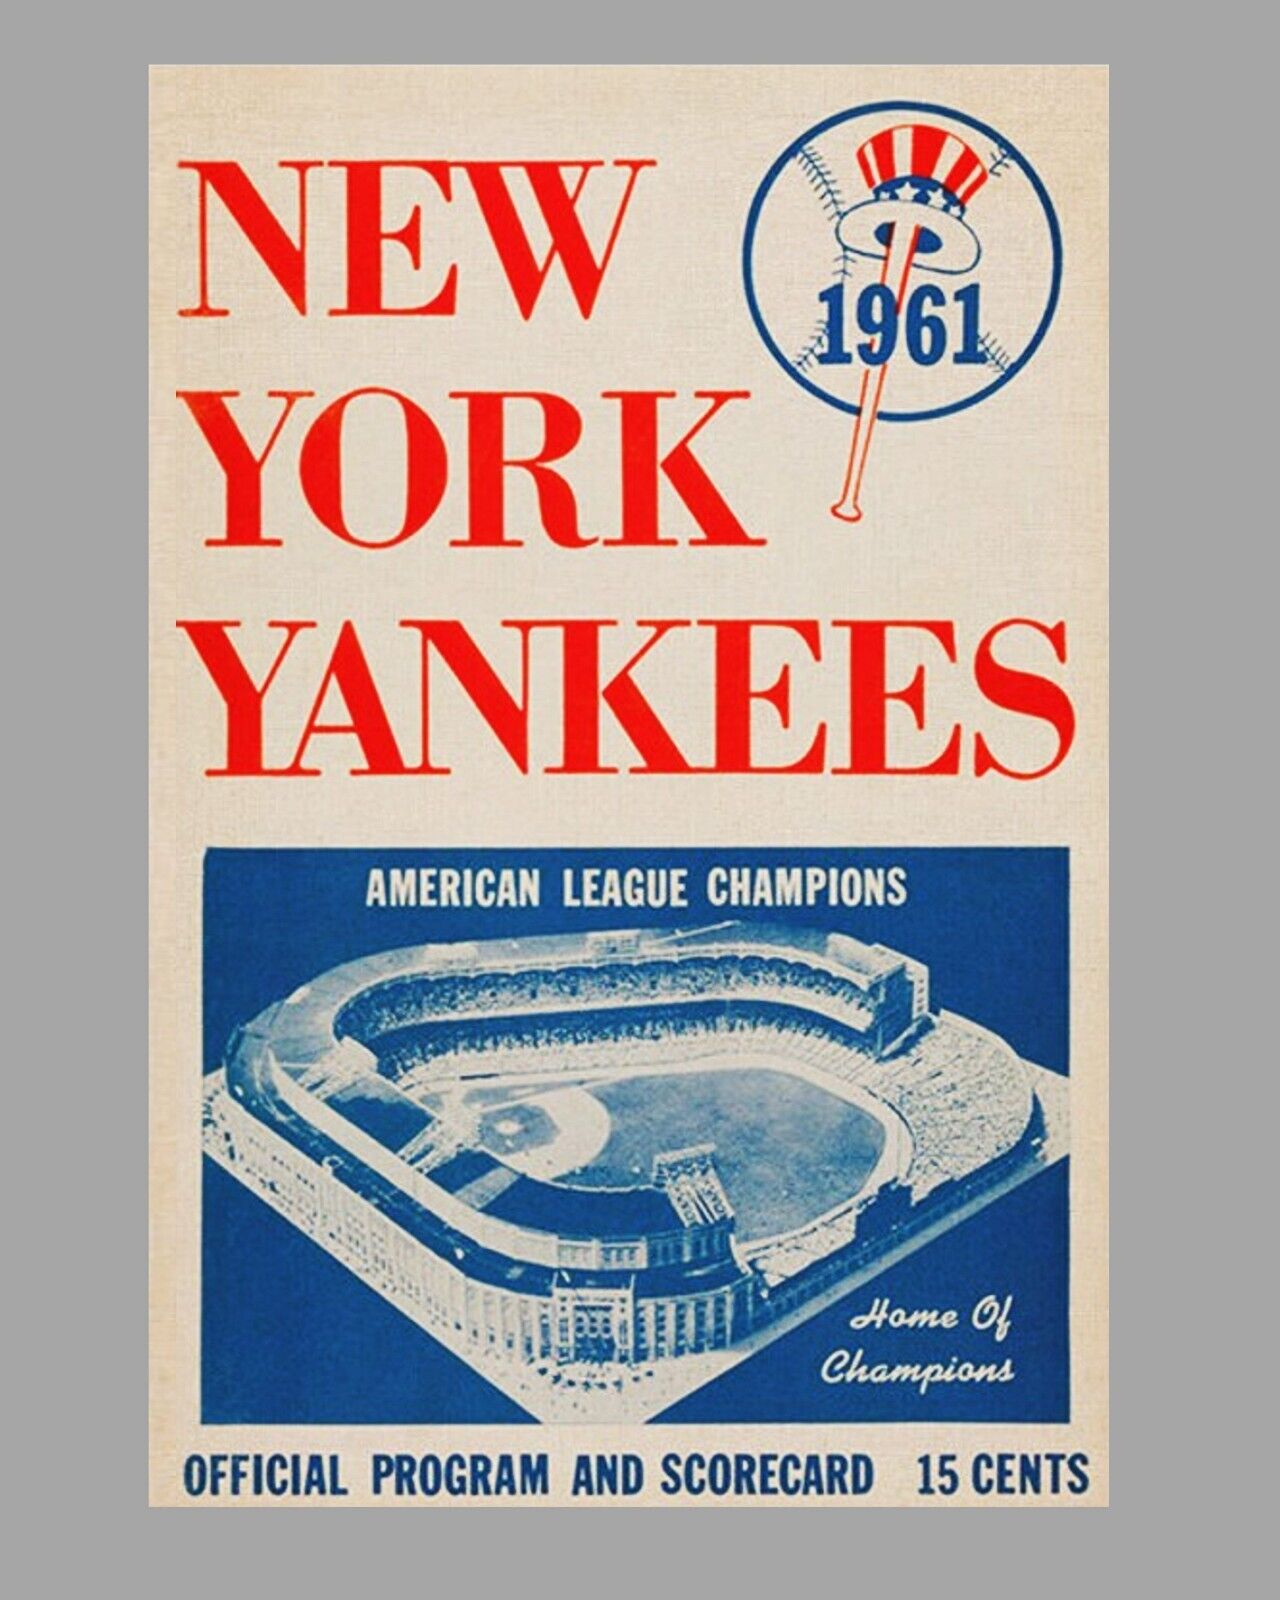 New York Yankees 1961 Program Cover 16 x 20 Baseball Art Rare Poster Vintage